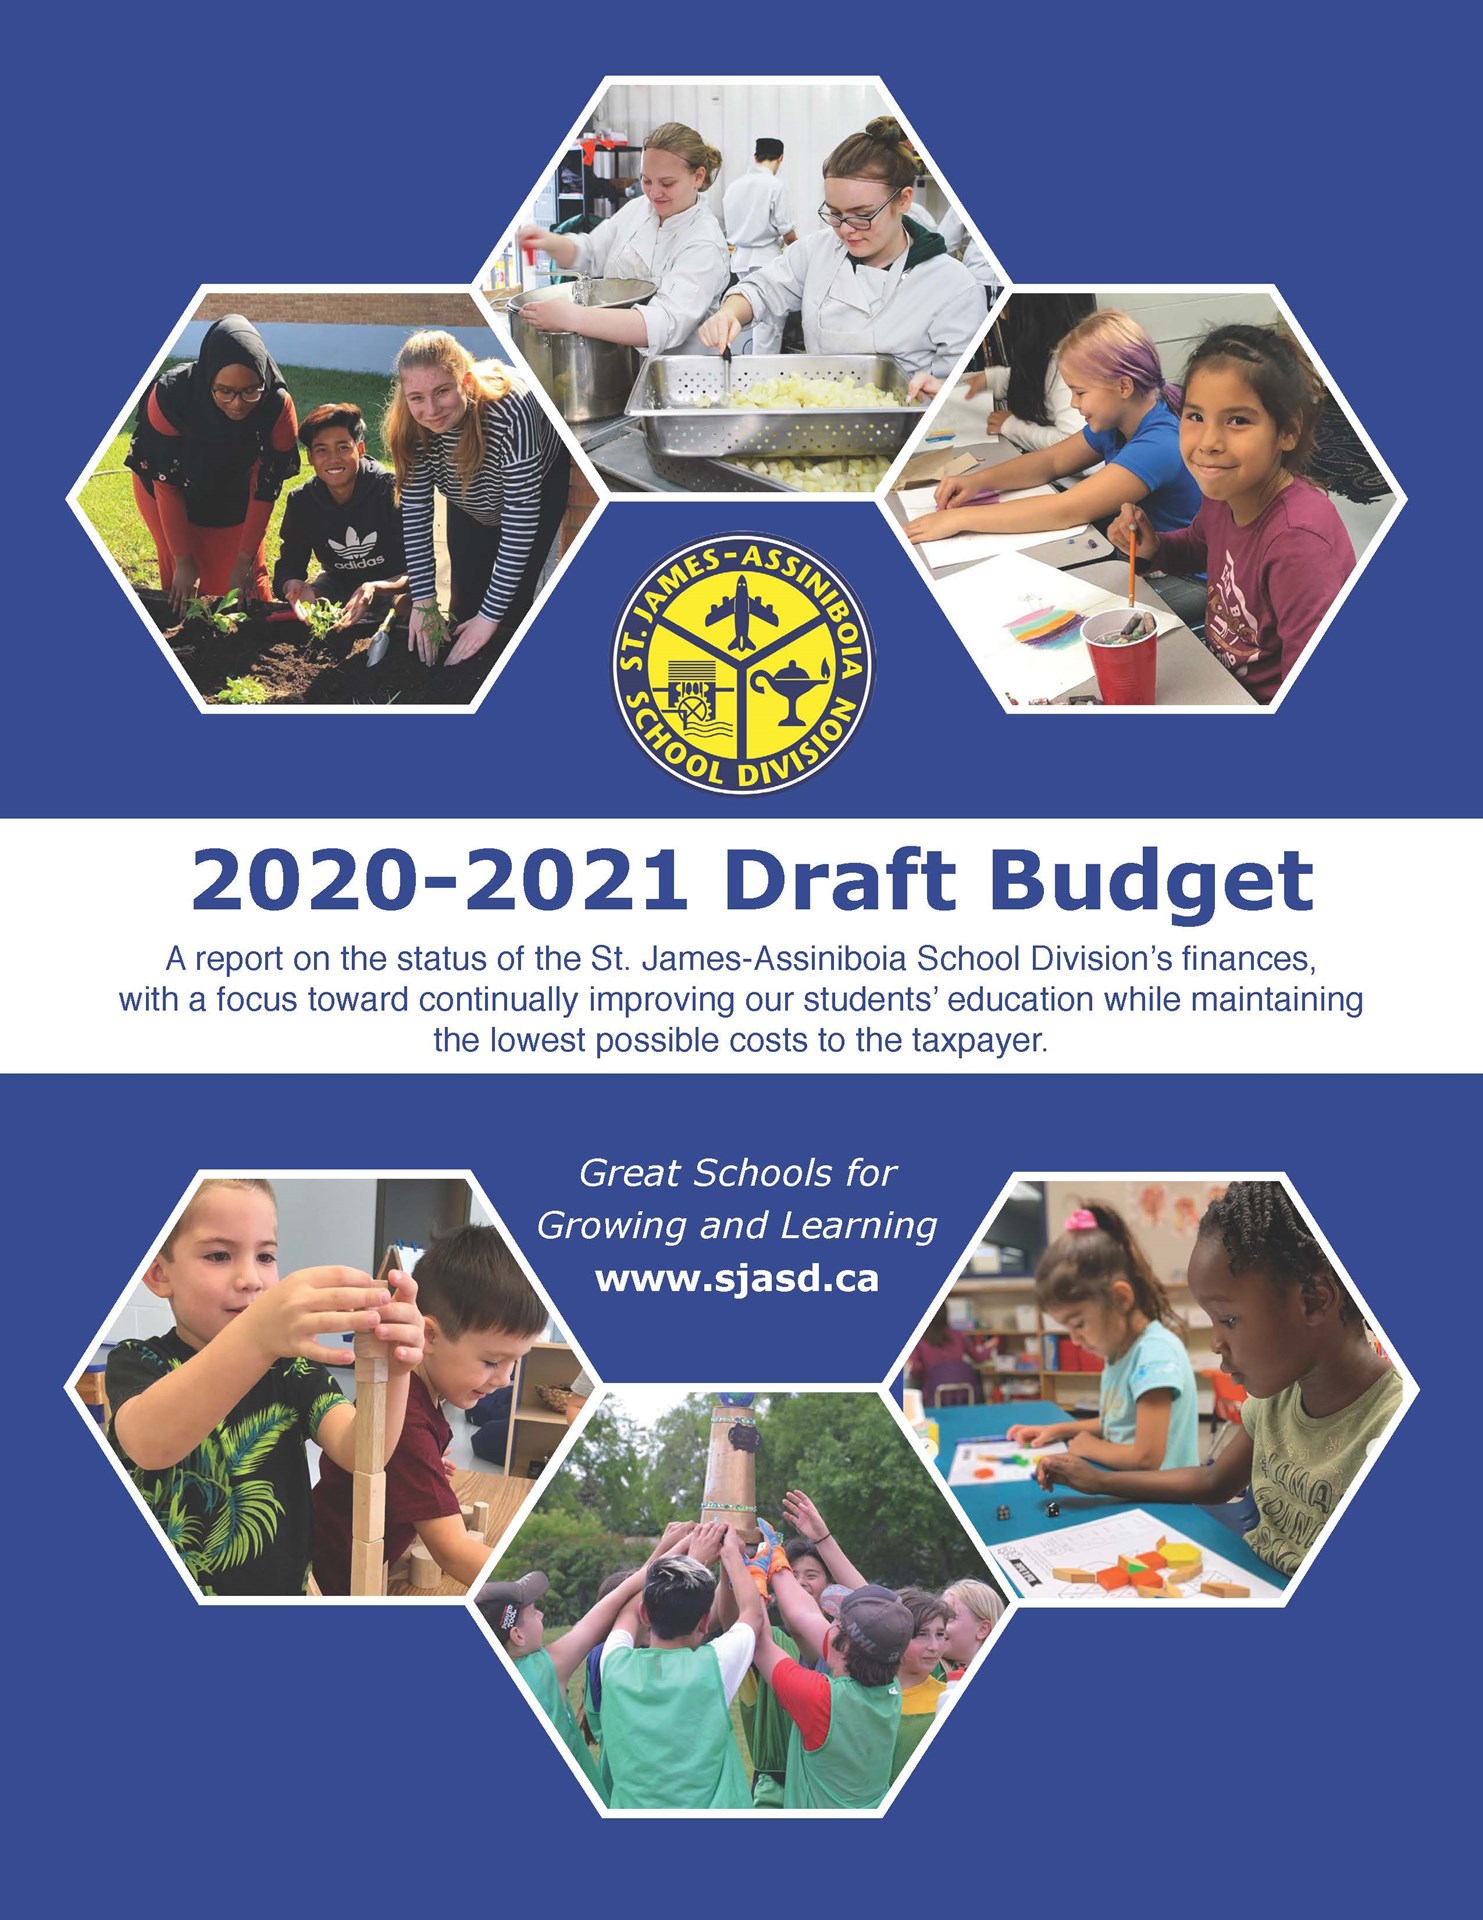 SJASD Draft Budget 2020-2021_Page_01.jpg